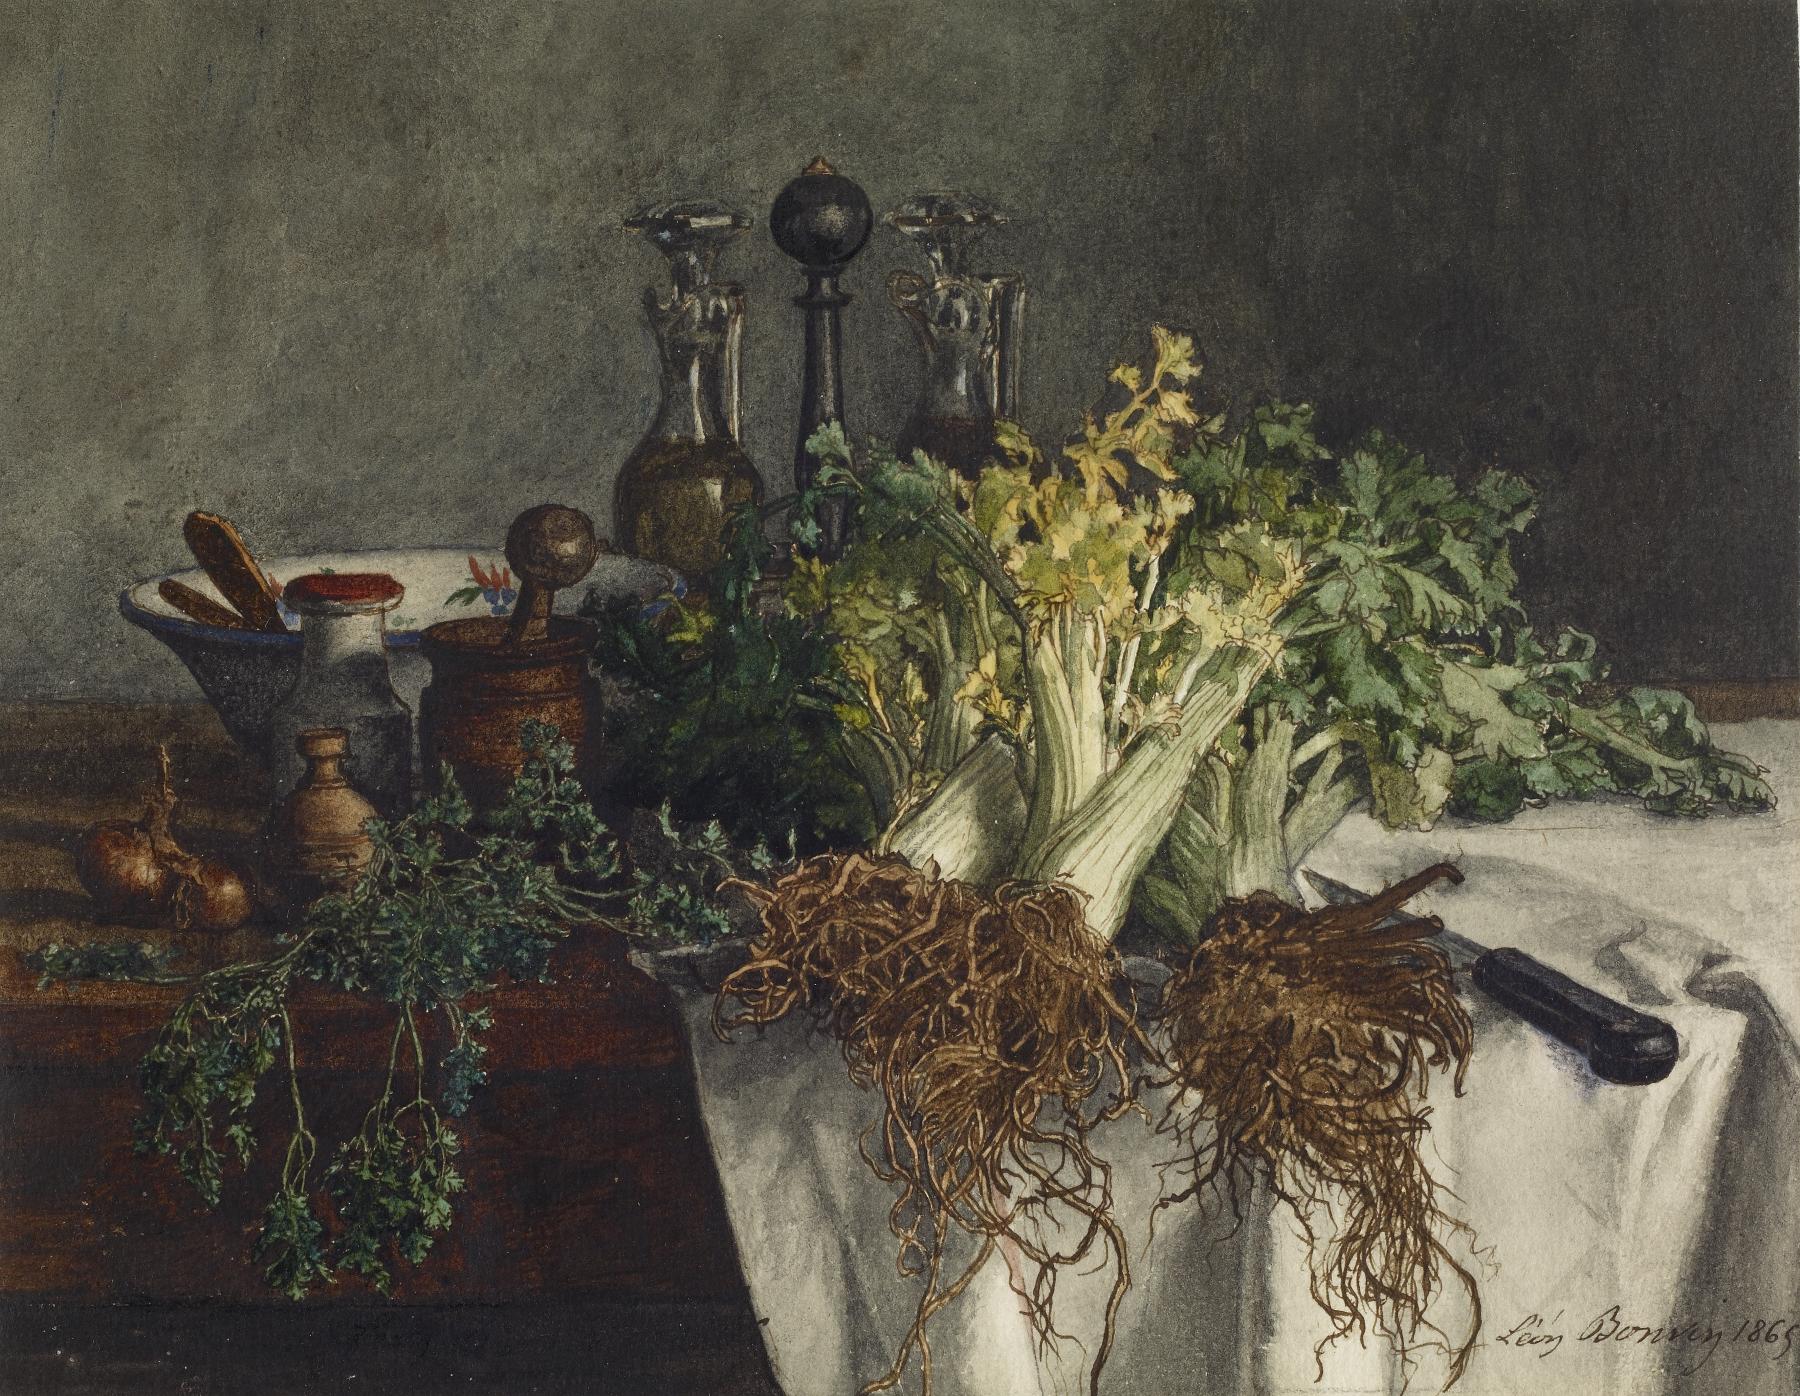 芹菜靜物 by Léon Bonvin - 1865 年 - 16.67 × 22.07 釐米 